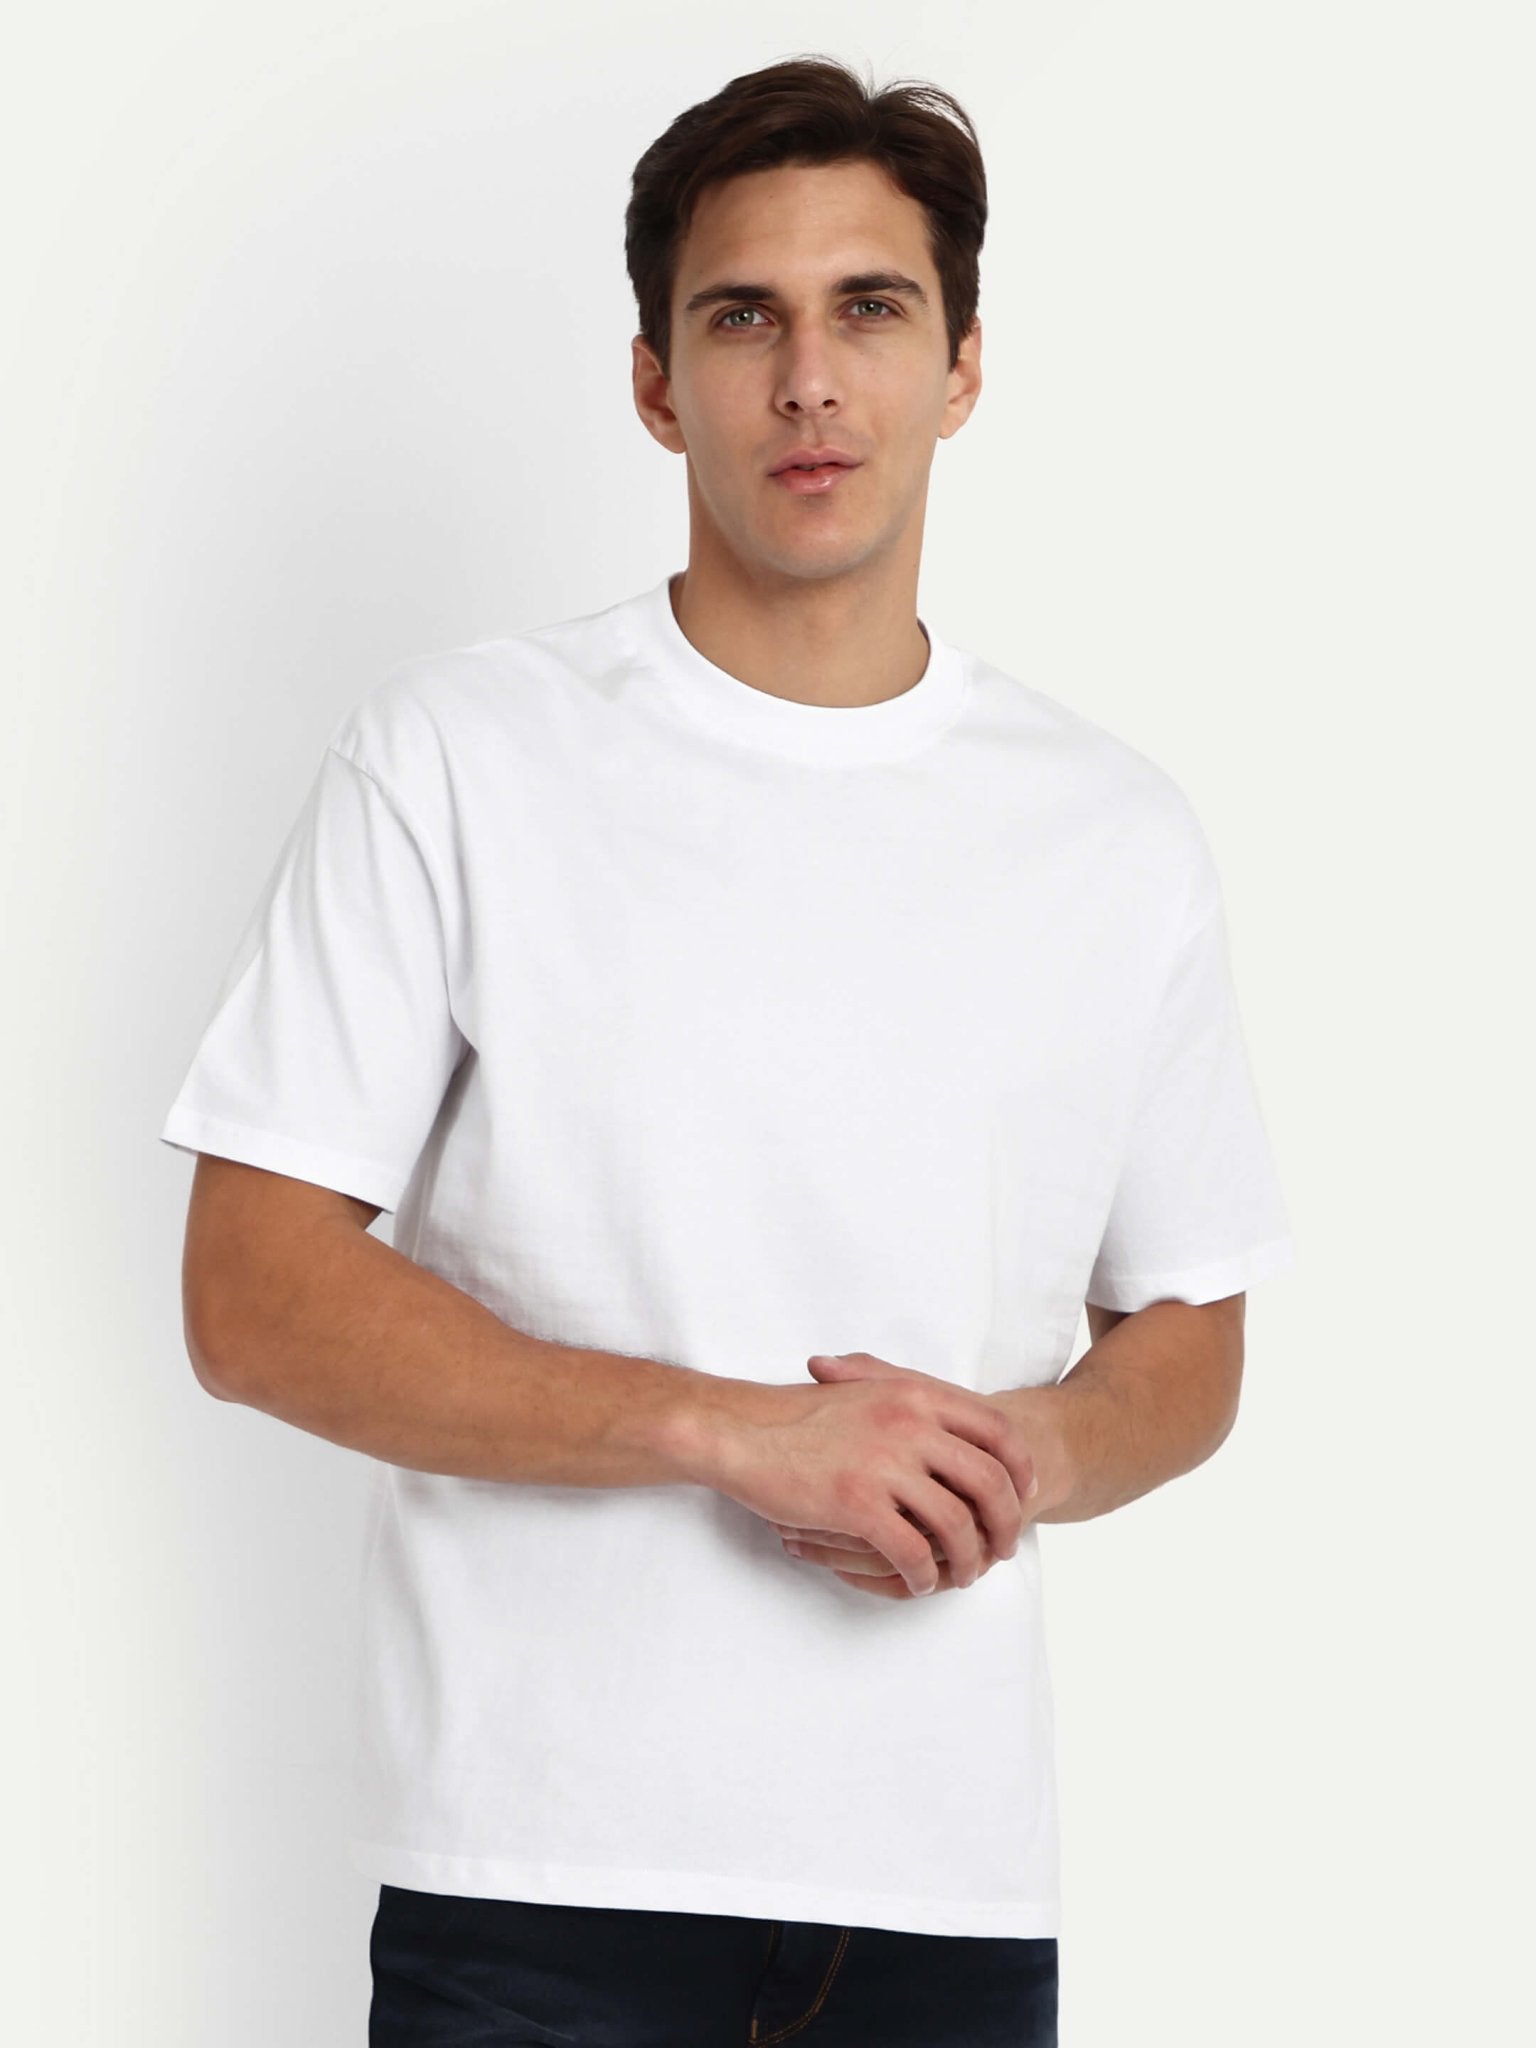 Basic Relaxed T-Shirt Set of 2: BW